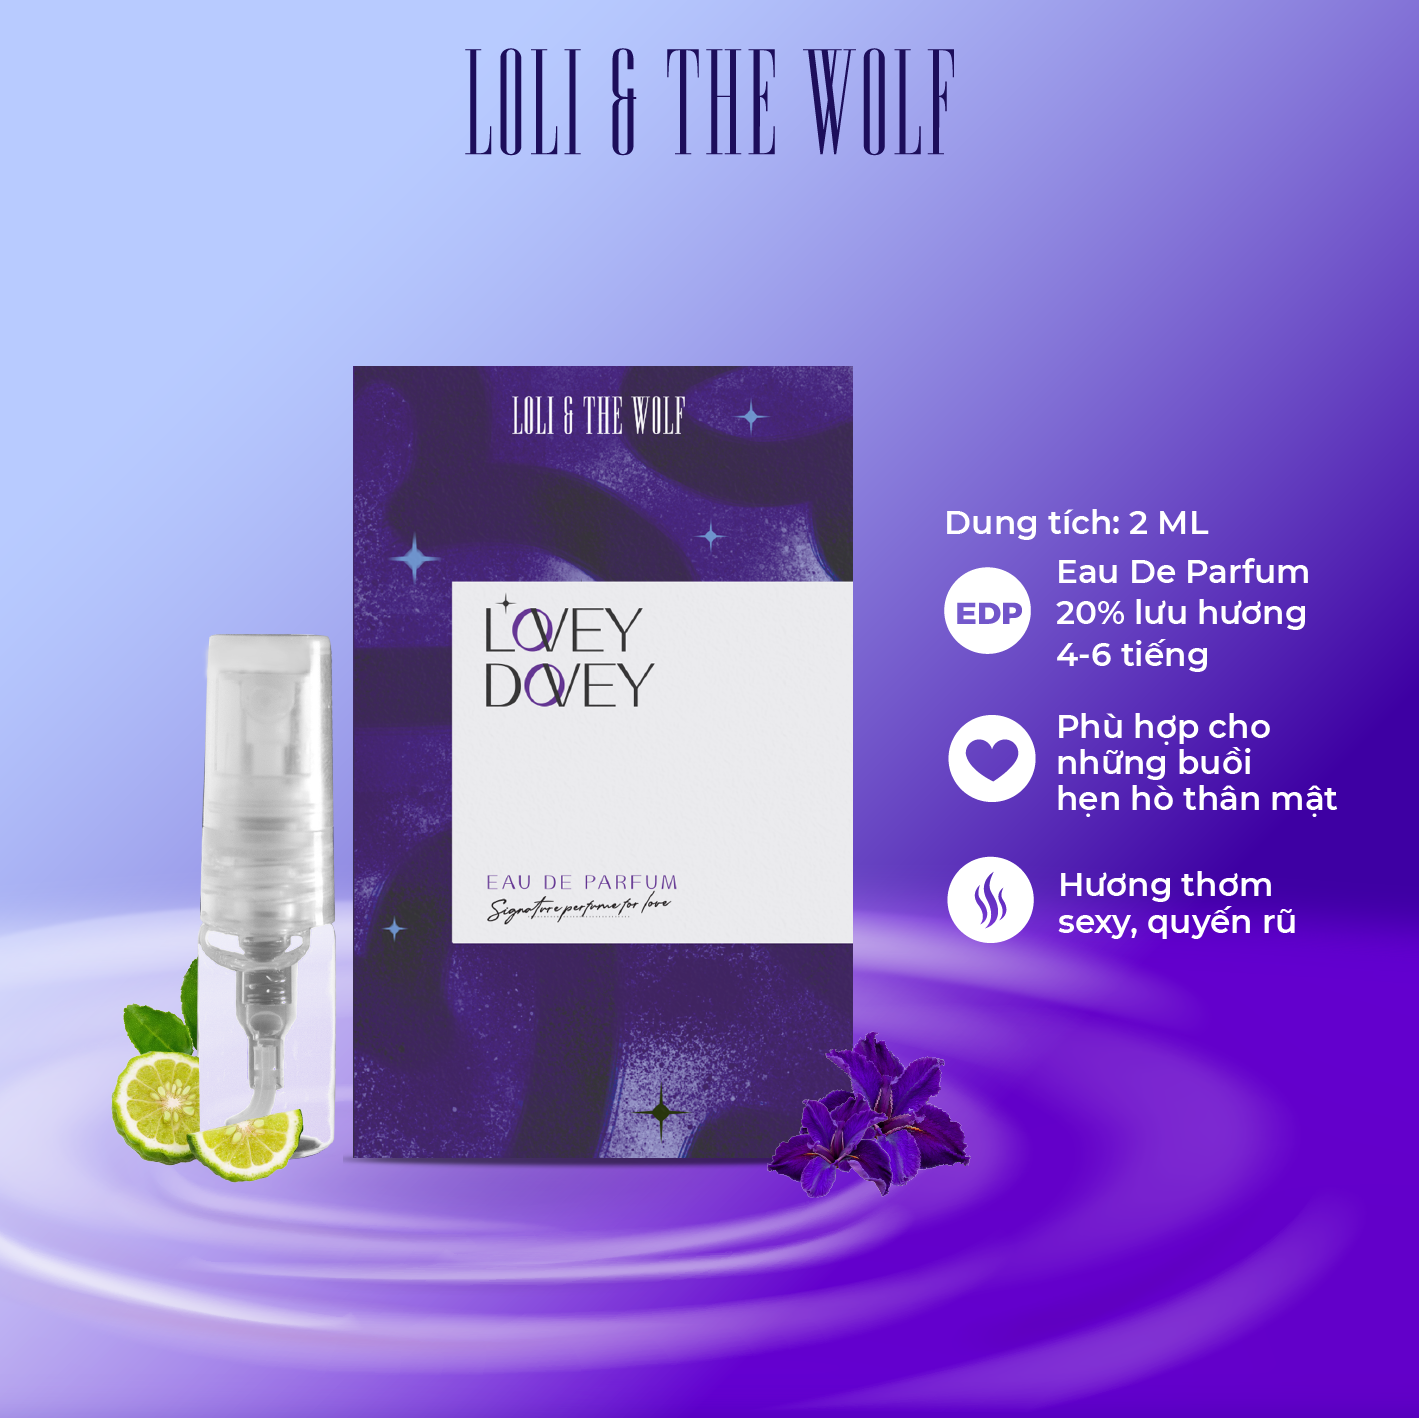 Nước hoa mini nữ LOVEY DOVEY Eau De Parfum dành cho nữ, lưu hương 6-8 tiếng, chai 2ml nhỏ gọn, tiện dụng – LOLI & THE WOLF